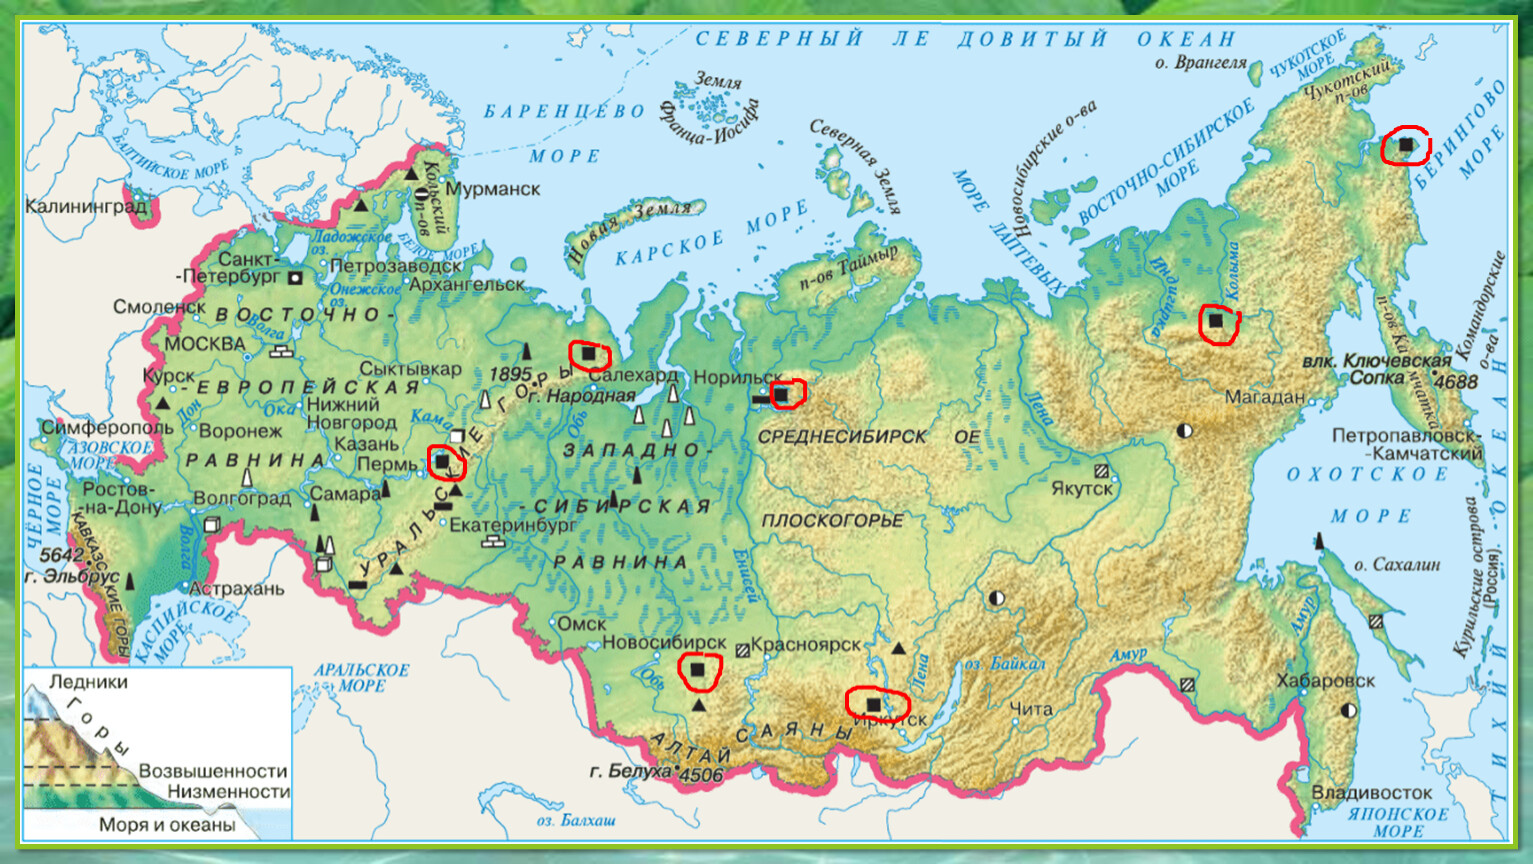 Где находятся равнины на контурной карте. Равнины на карте России 4 класс окружающий. Карта России с равнинами и горами 4 класс. Физическая карта России из учебника окружающий мир 4 класс. Карта равнин России 4 класс окружающий мир.